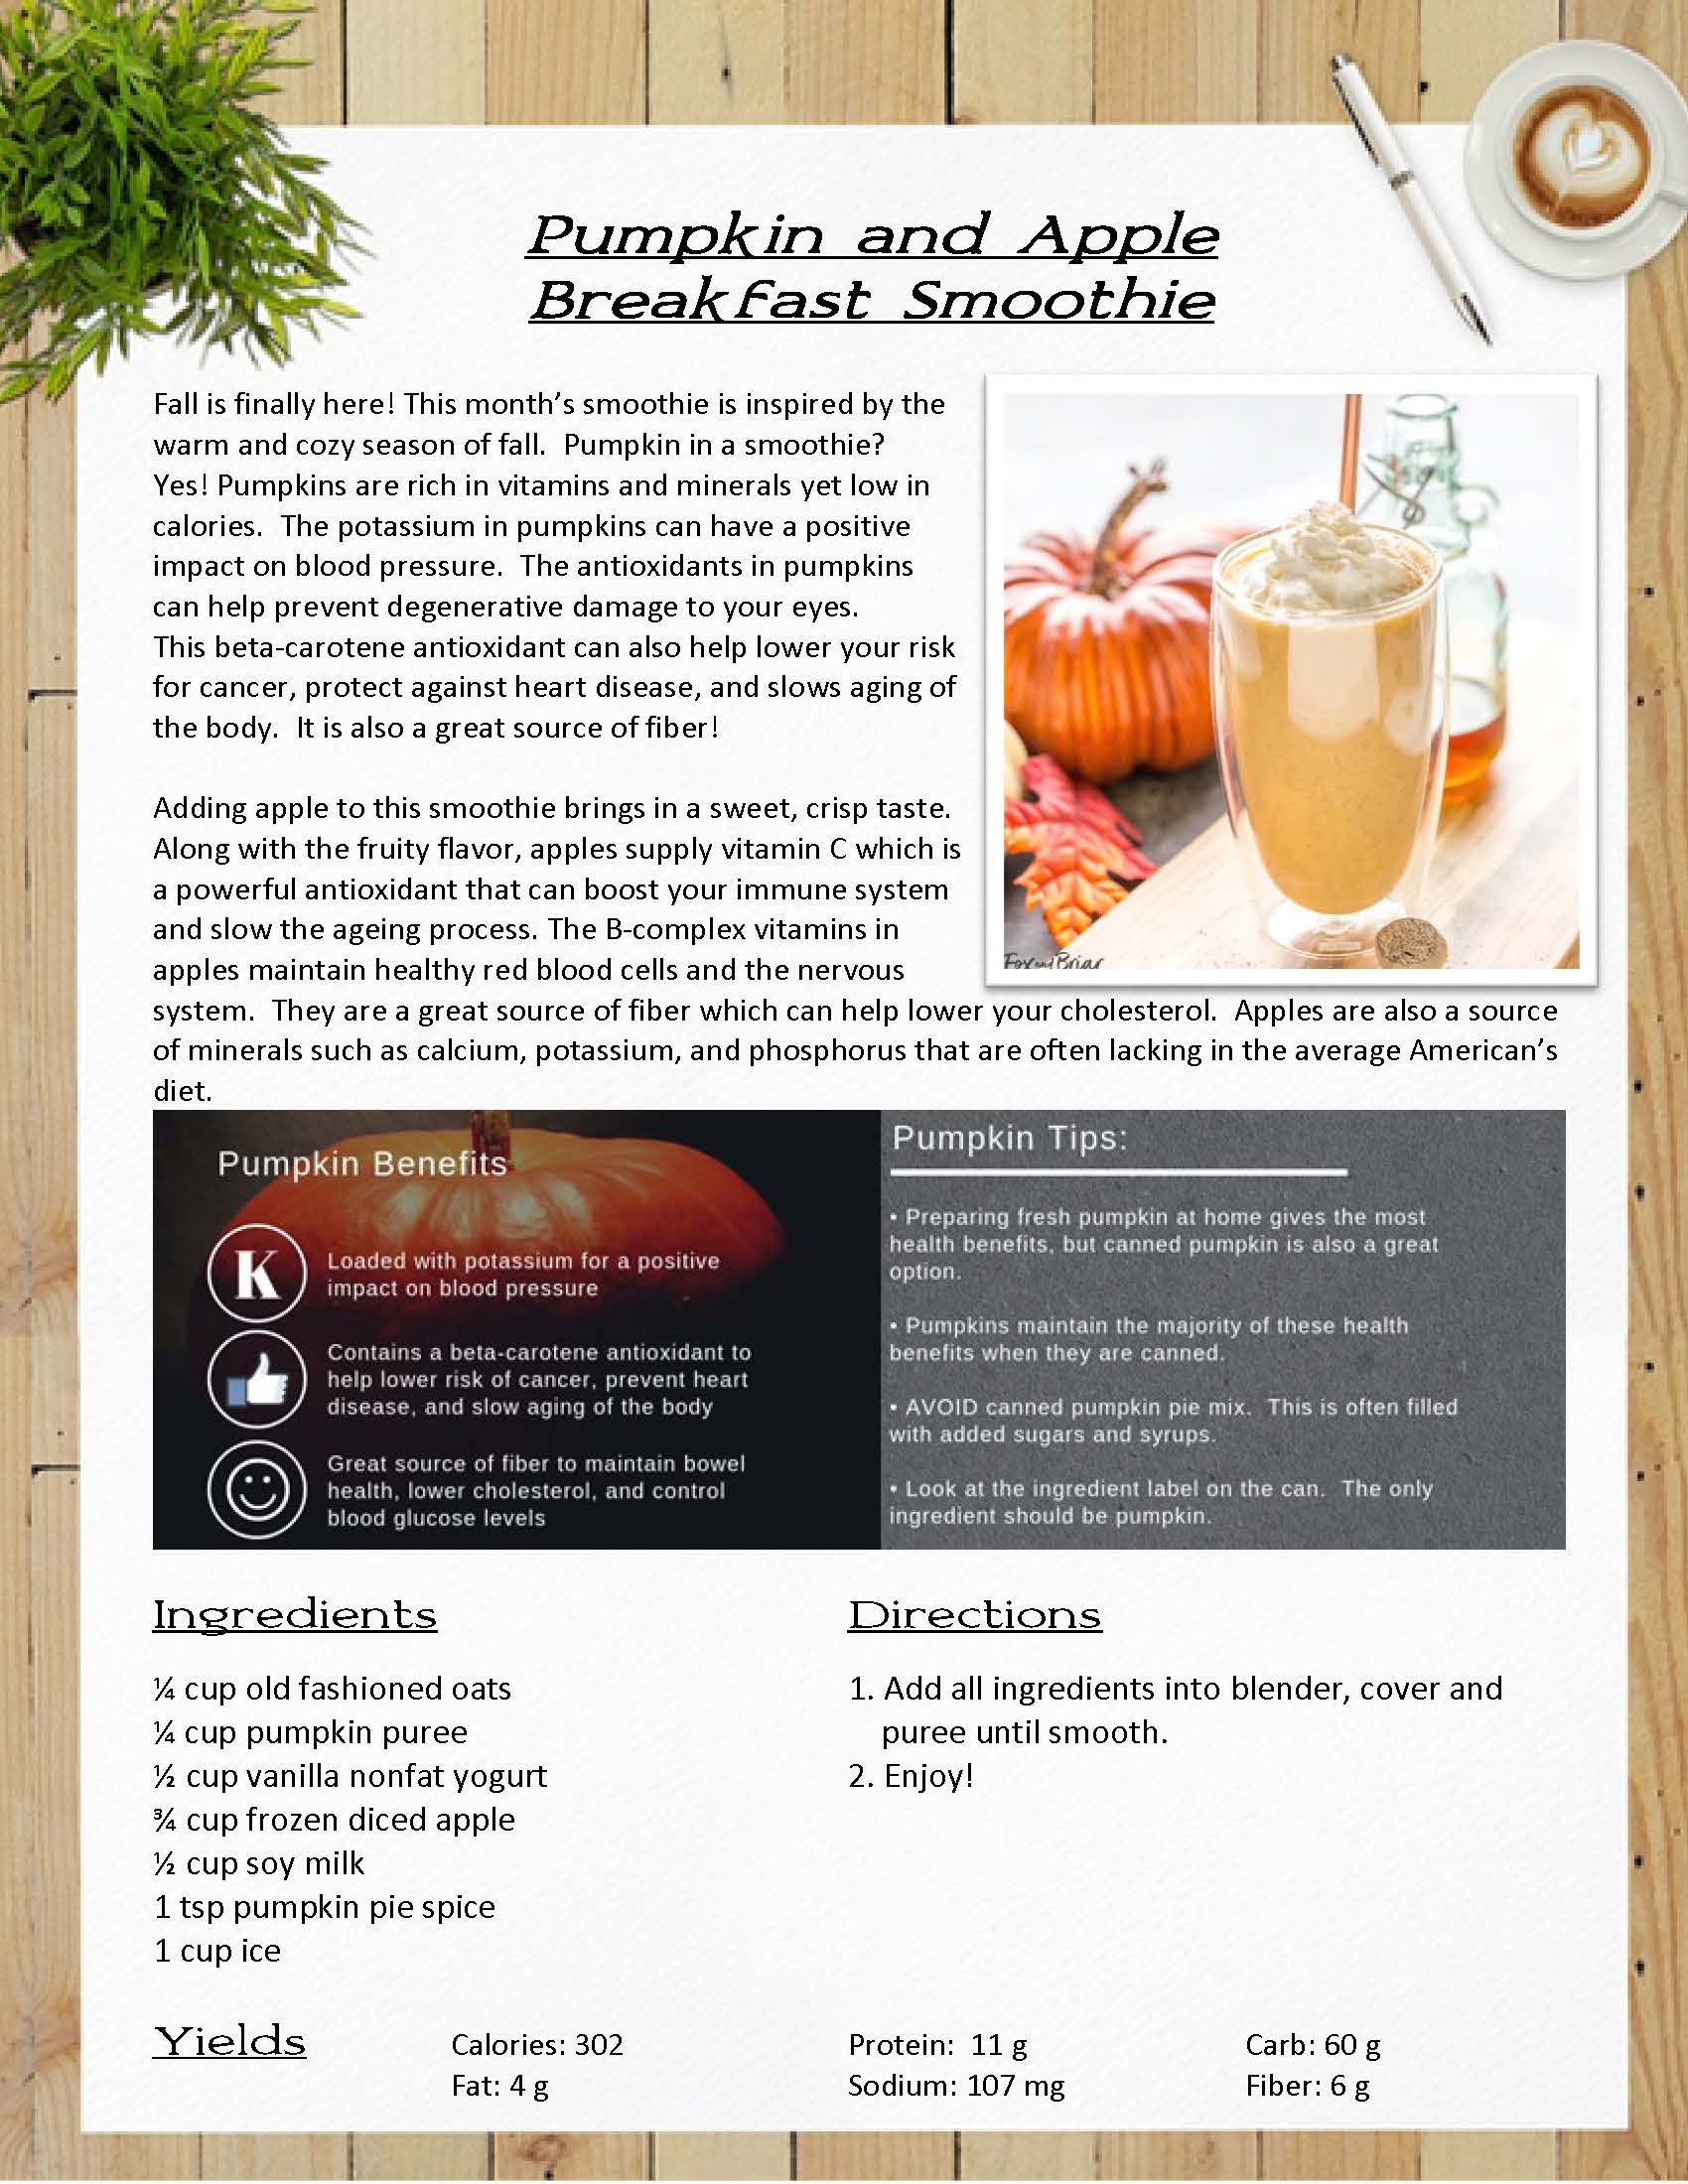 Pumpkin & Apple Breakfast Smoothie